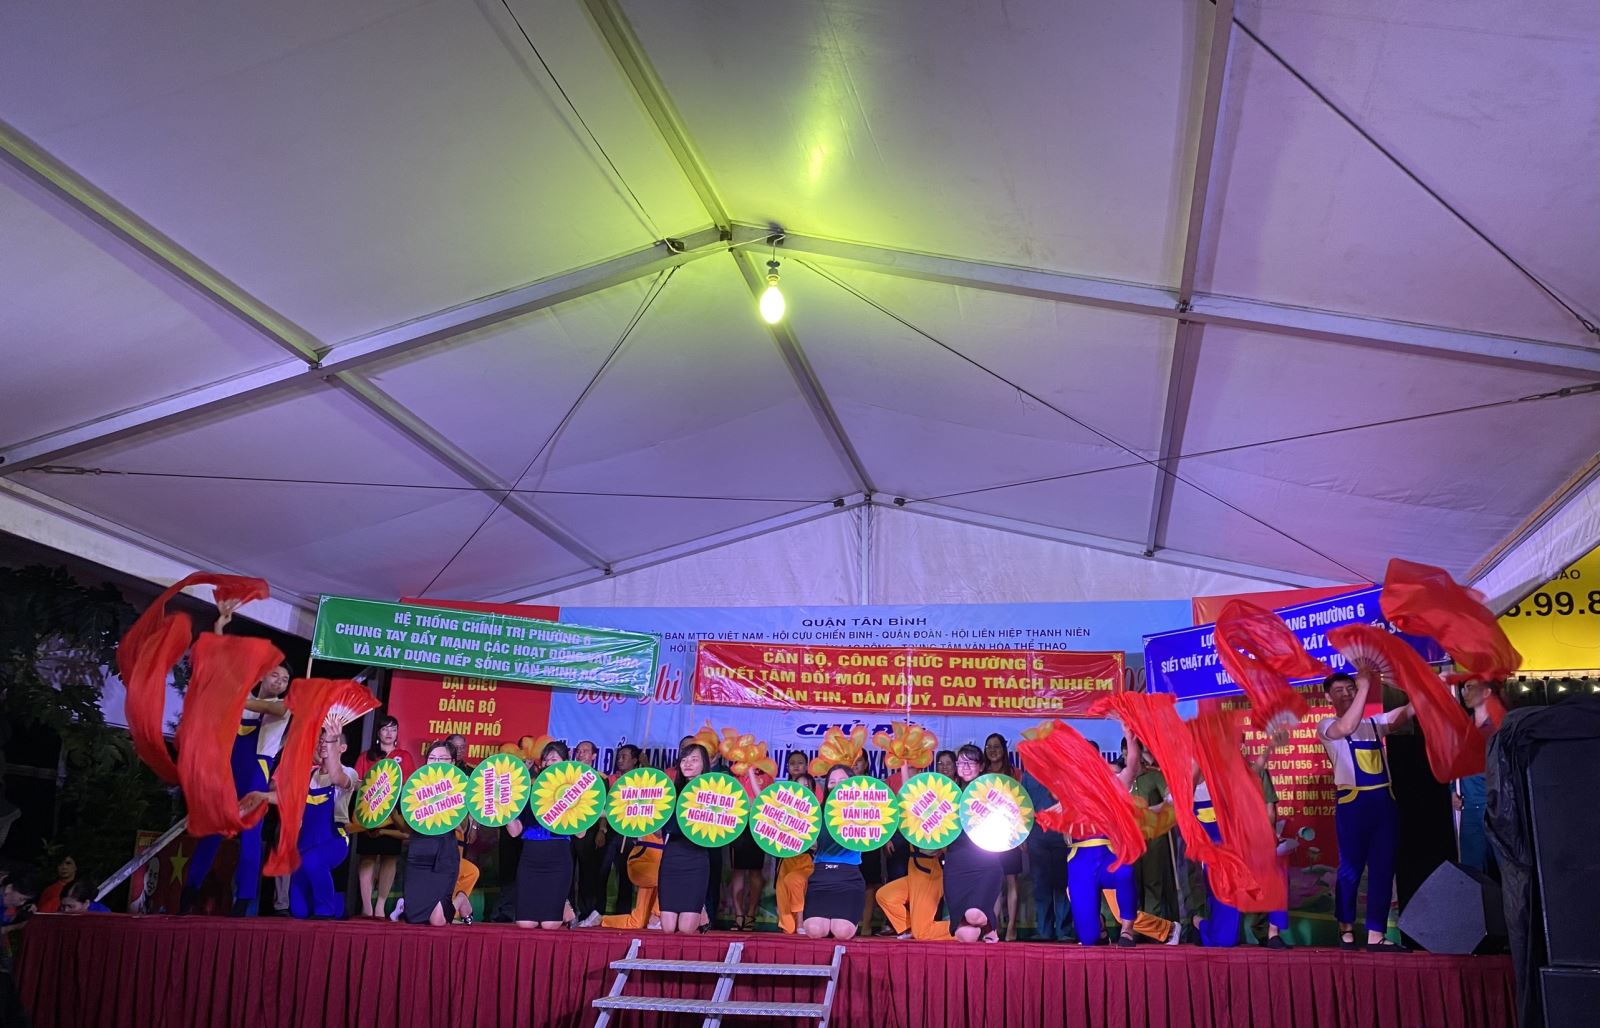 Tổ chức Hội thi Văn nghệ tuyên truyền quận Tân Bình lần thứ III năm 2020